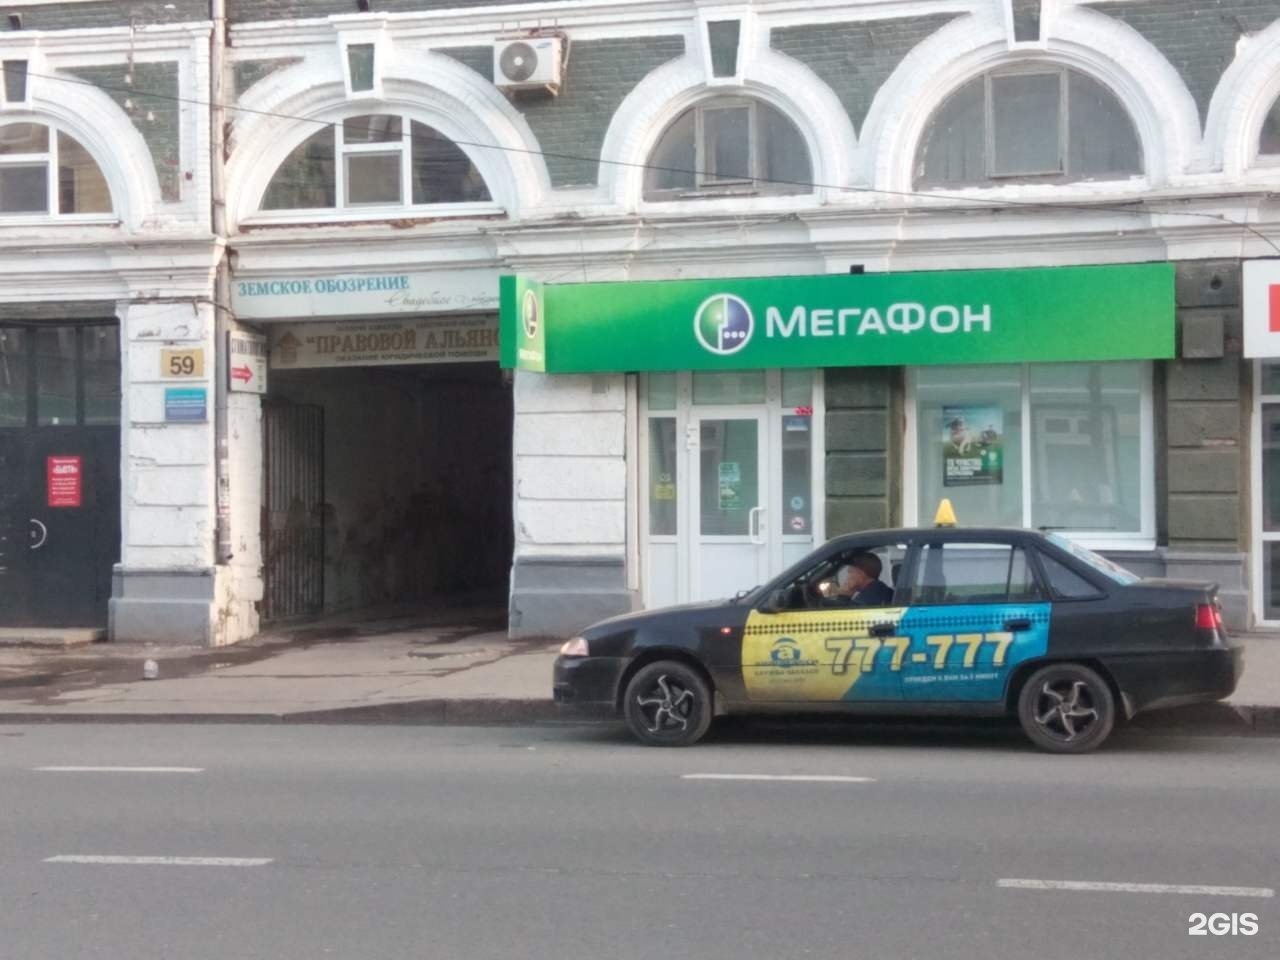 головной офис мегафона в москве